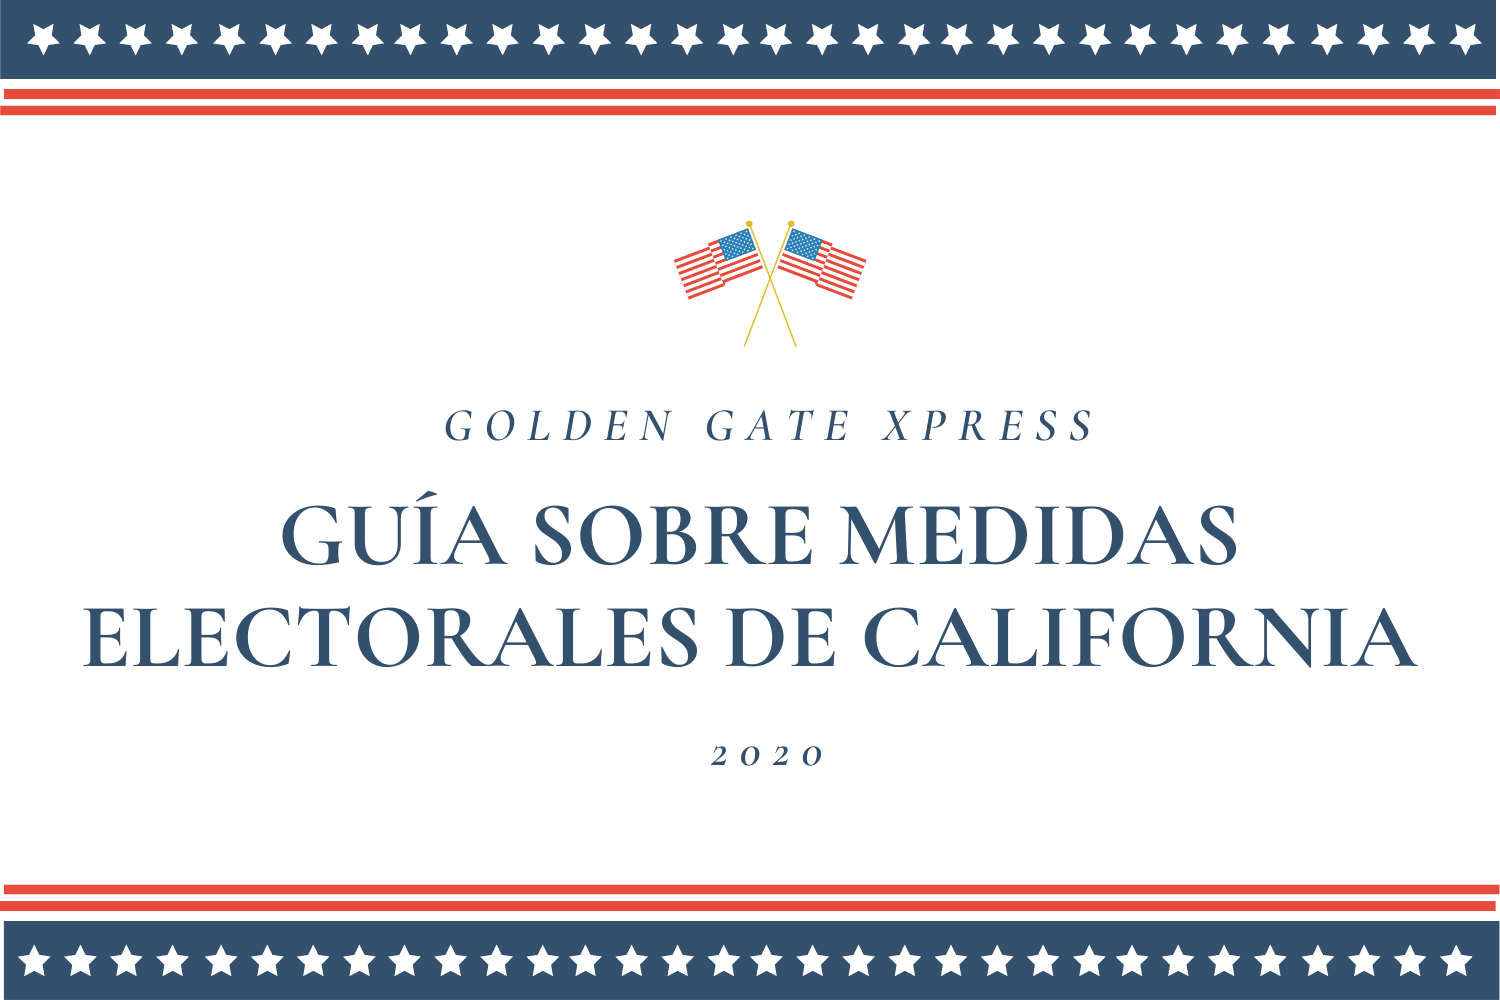 Guía Sobre Medidas Electorales de California 2020 para Xpress